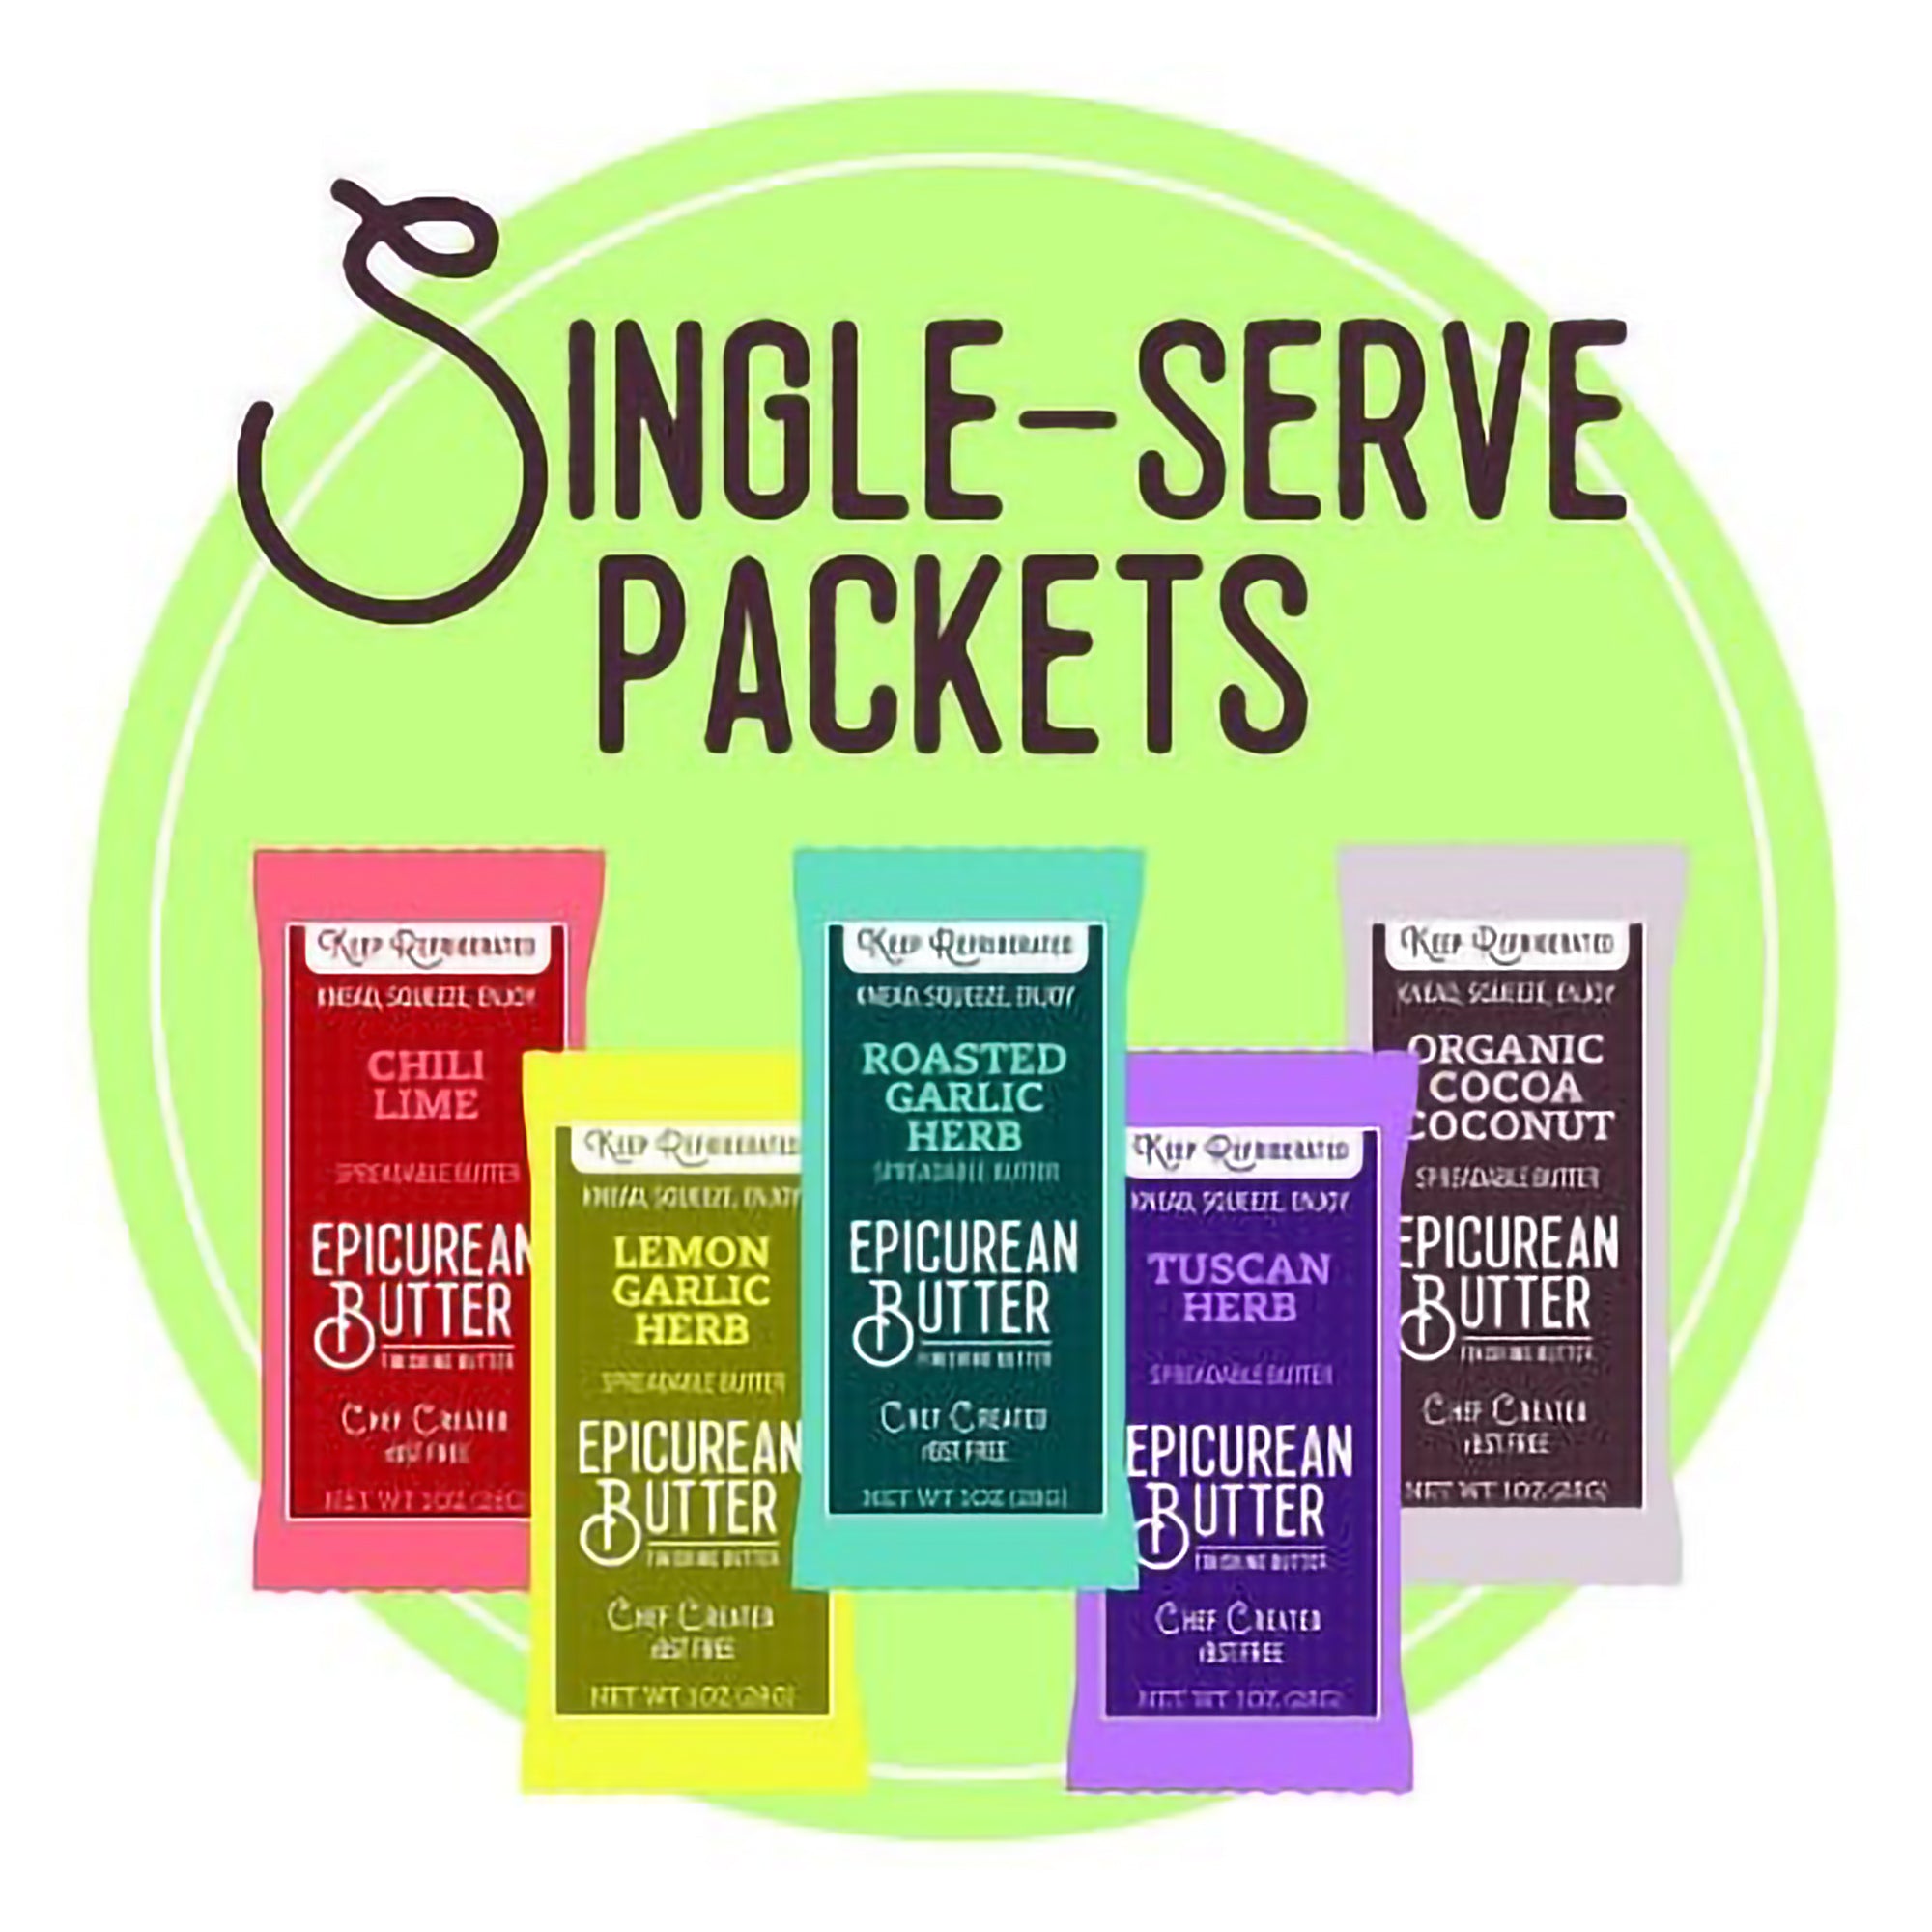 Epicurean Butter single serve packets